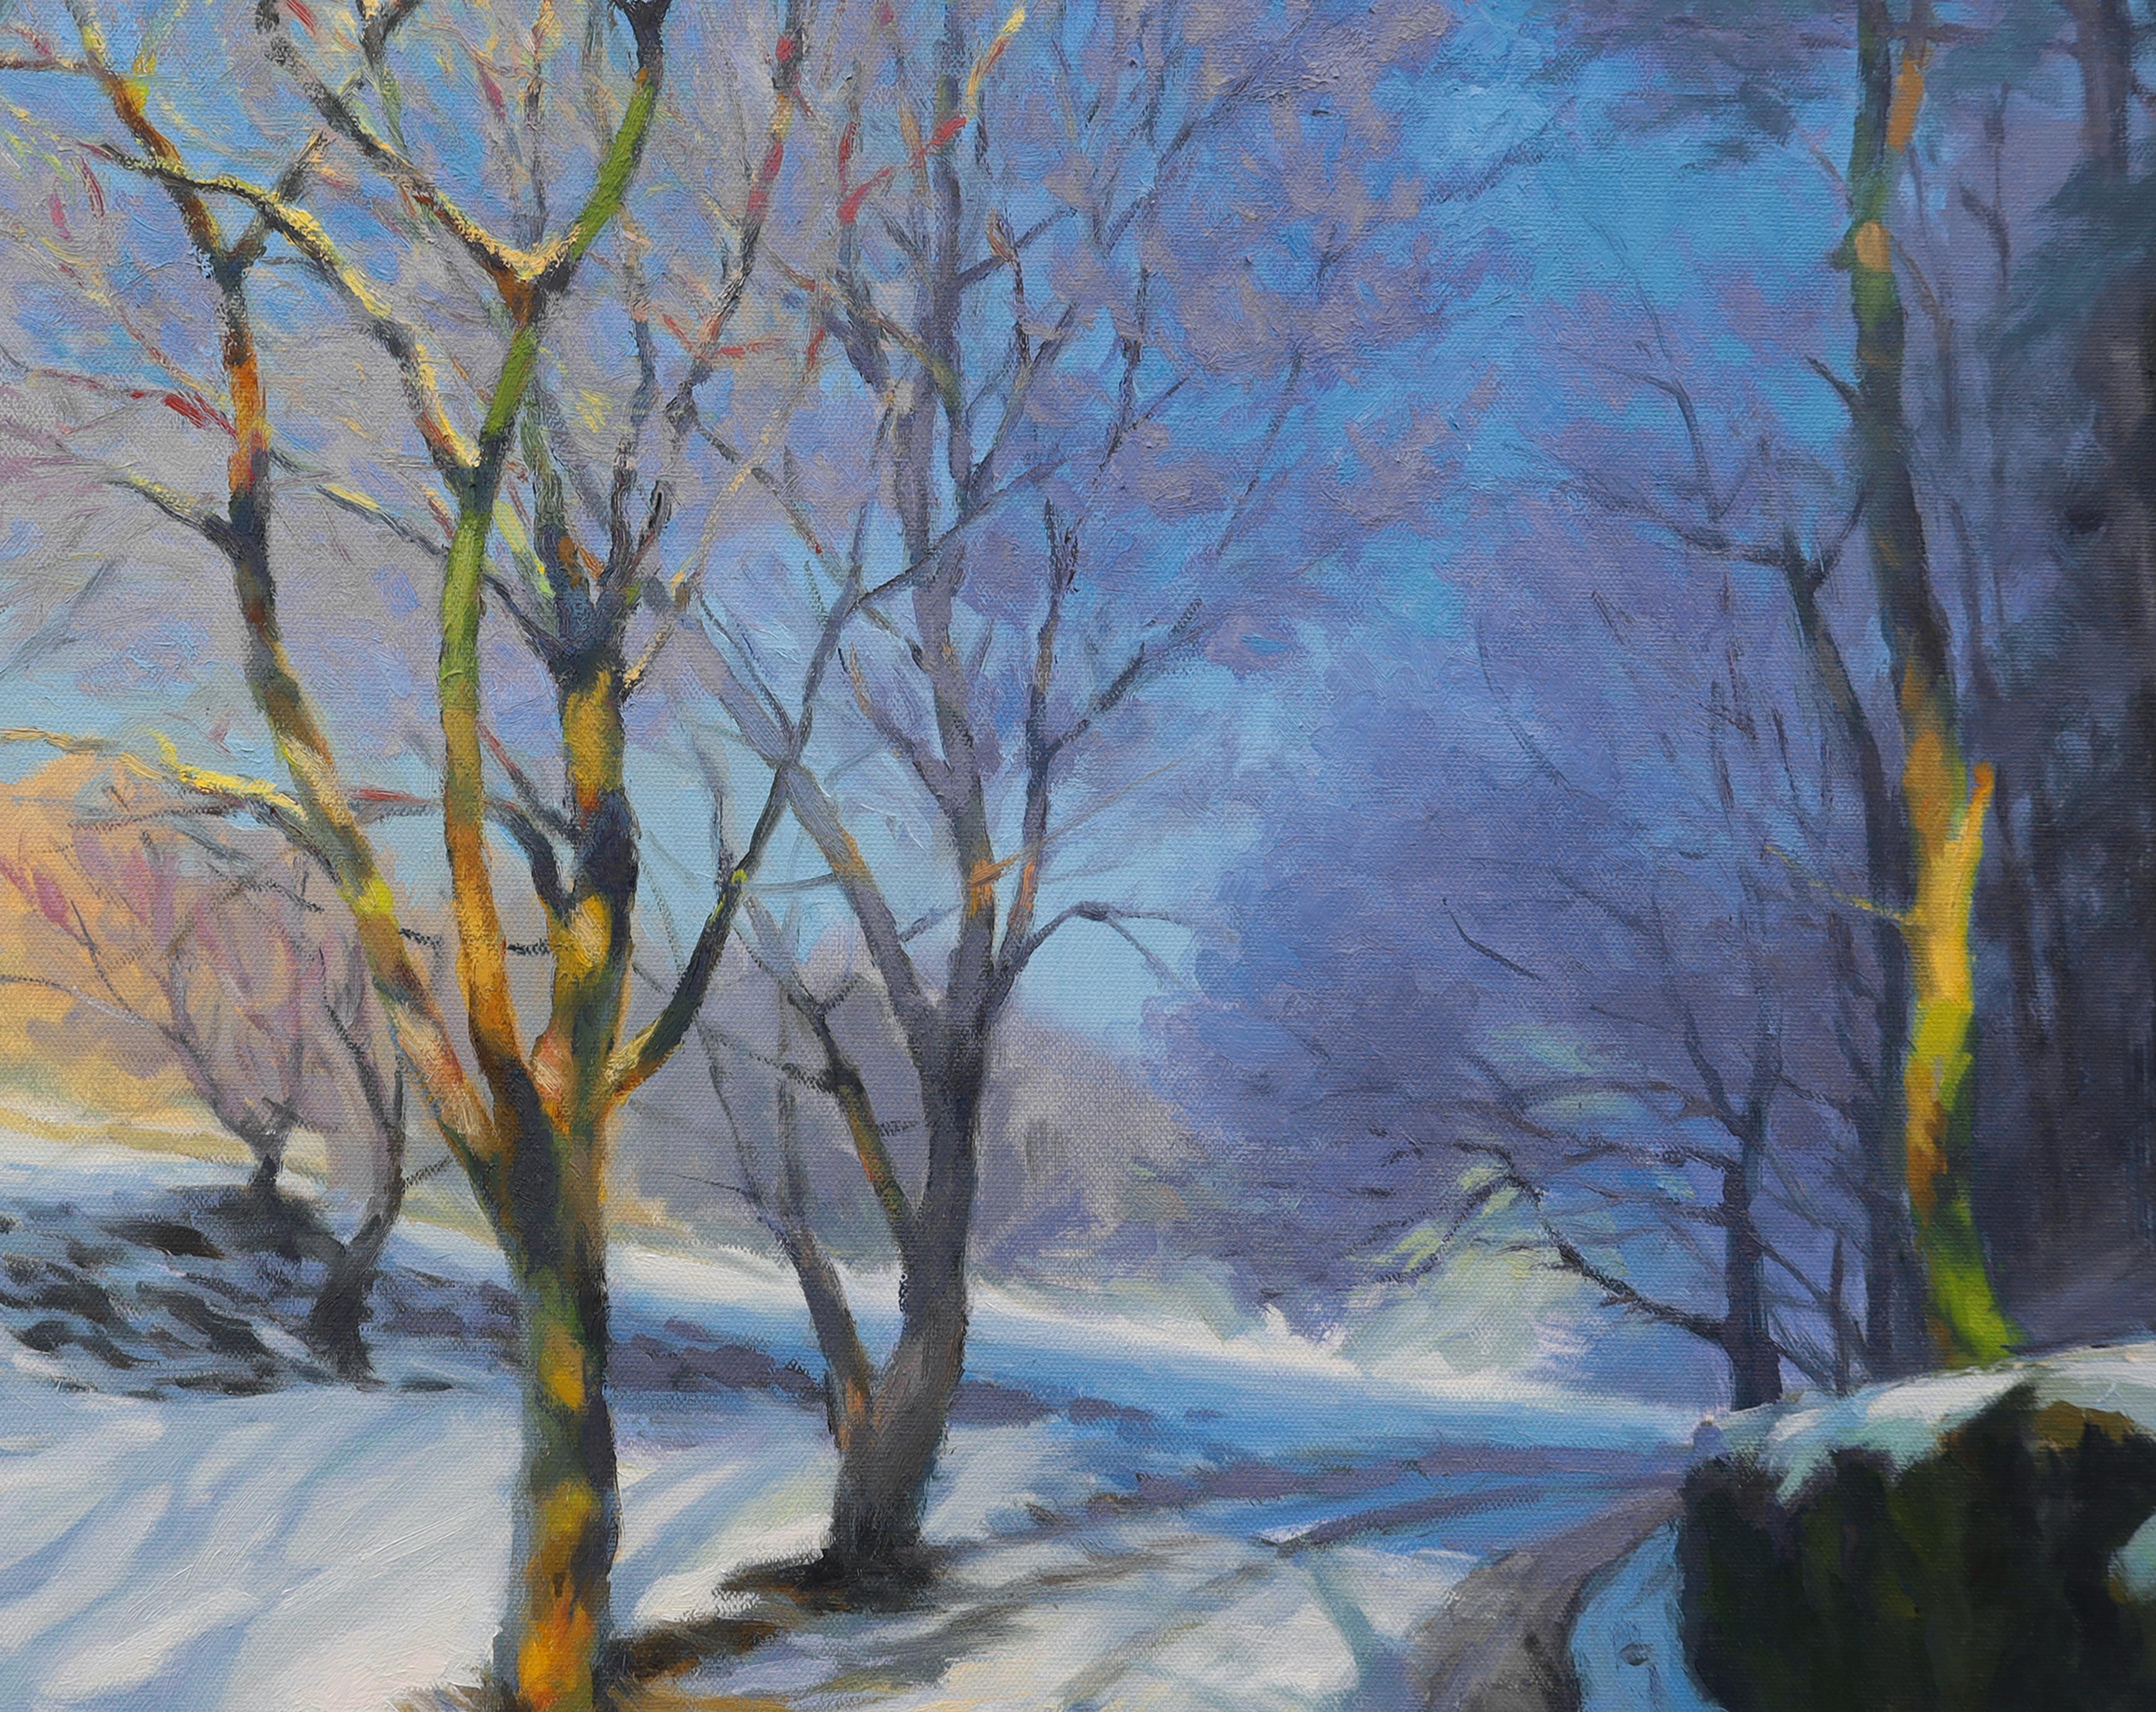 <p>Kommentare des KünstlersEine Straße bleibt unter einer Schneedecke sichtbar.<br> Die angrenzenden Bäume, von denen einige im Schatten liegen, während andere sich in der Wärme der Sonne sonnen, zeigen Farben und Formen, die einen Kontrast zu der